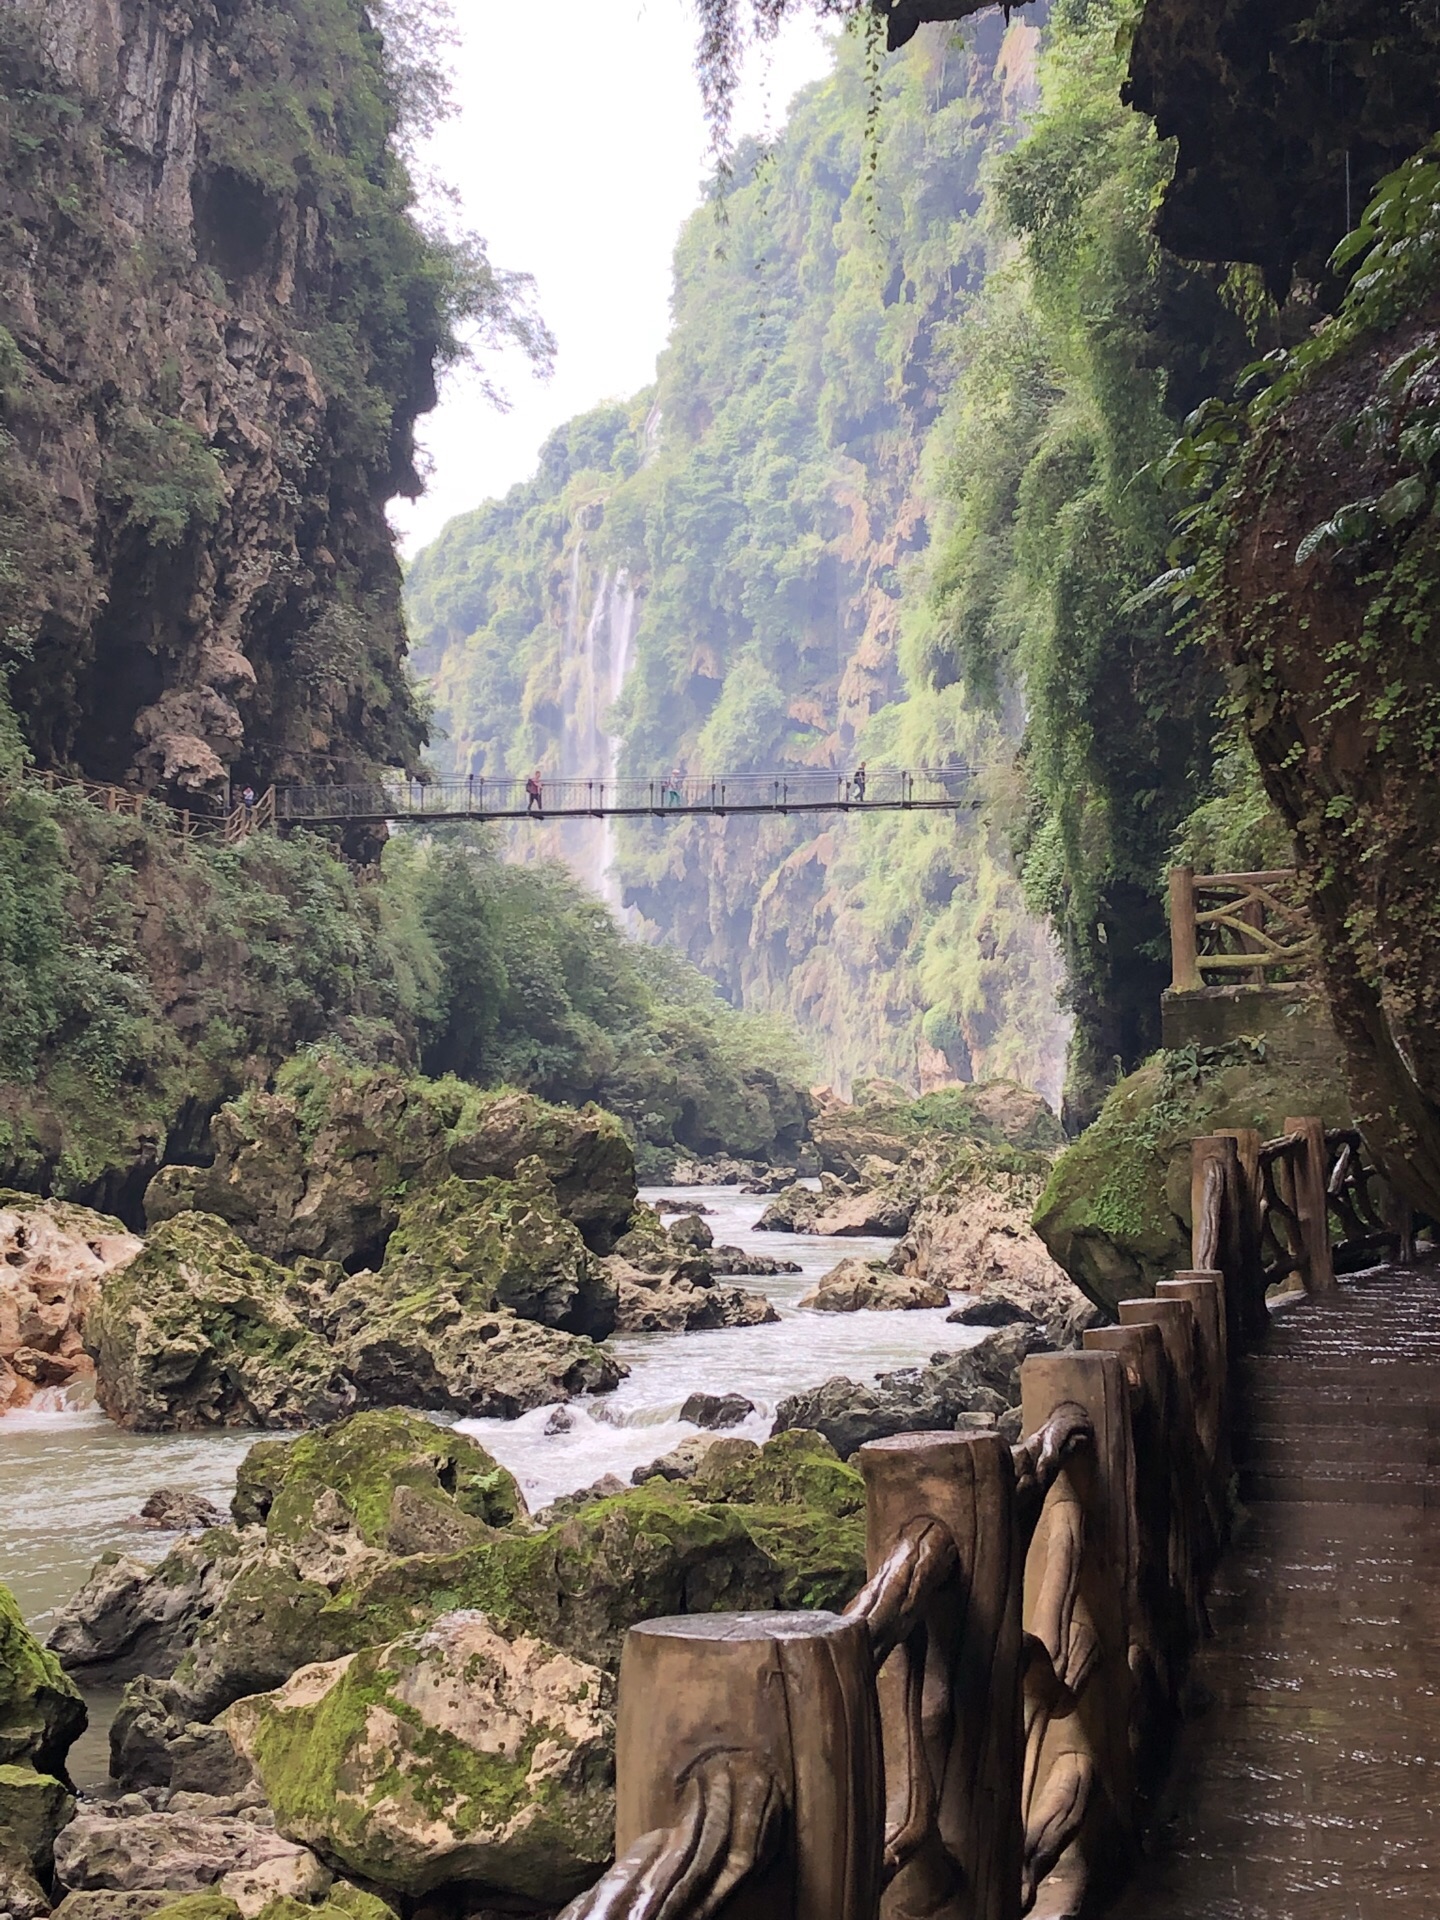 马岭河峡谷游览路线 游览马岭河峡谷的最佳路线是什么